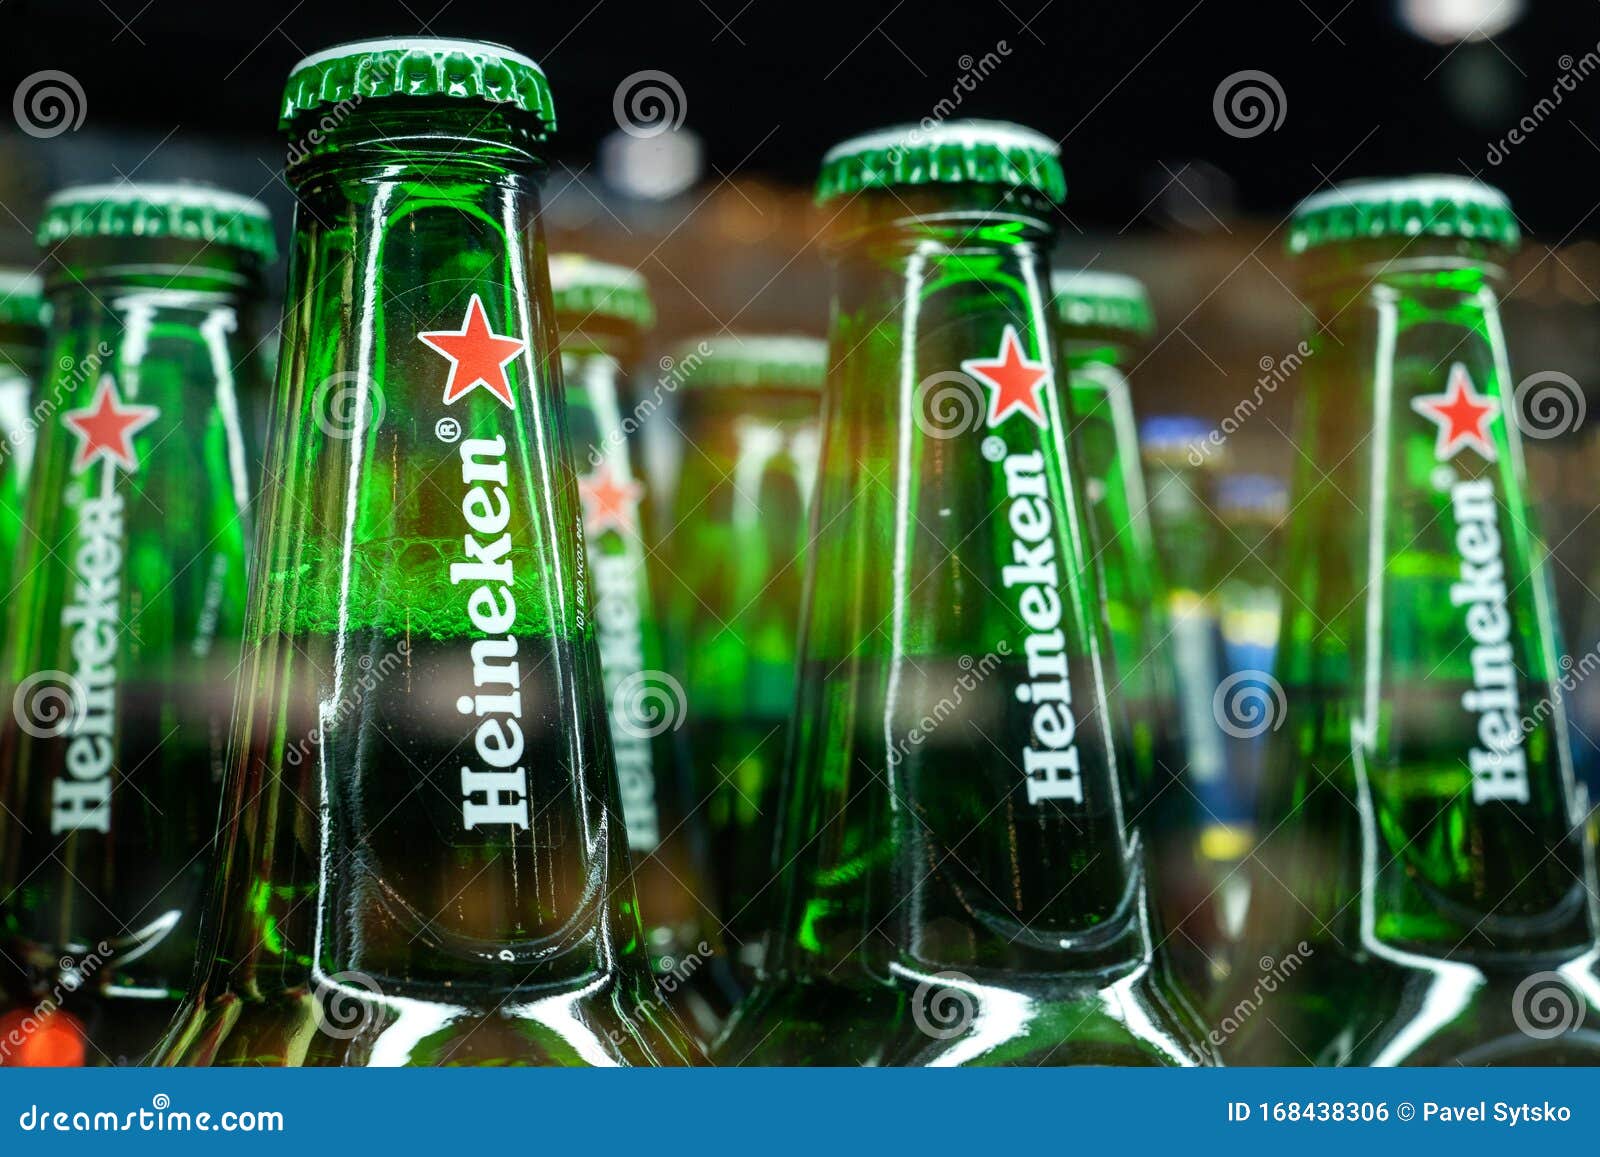 Party Flaschen / Bier - Kühlschrank